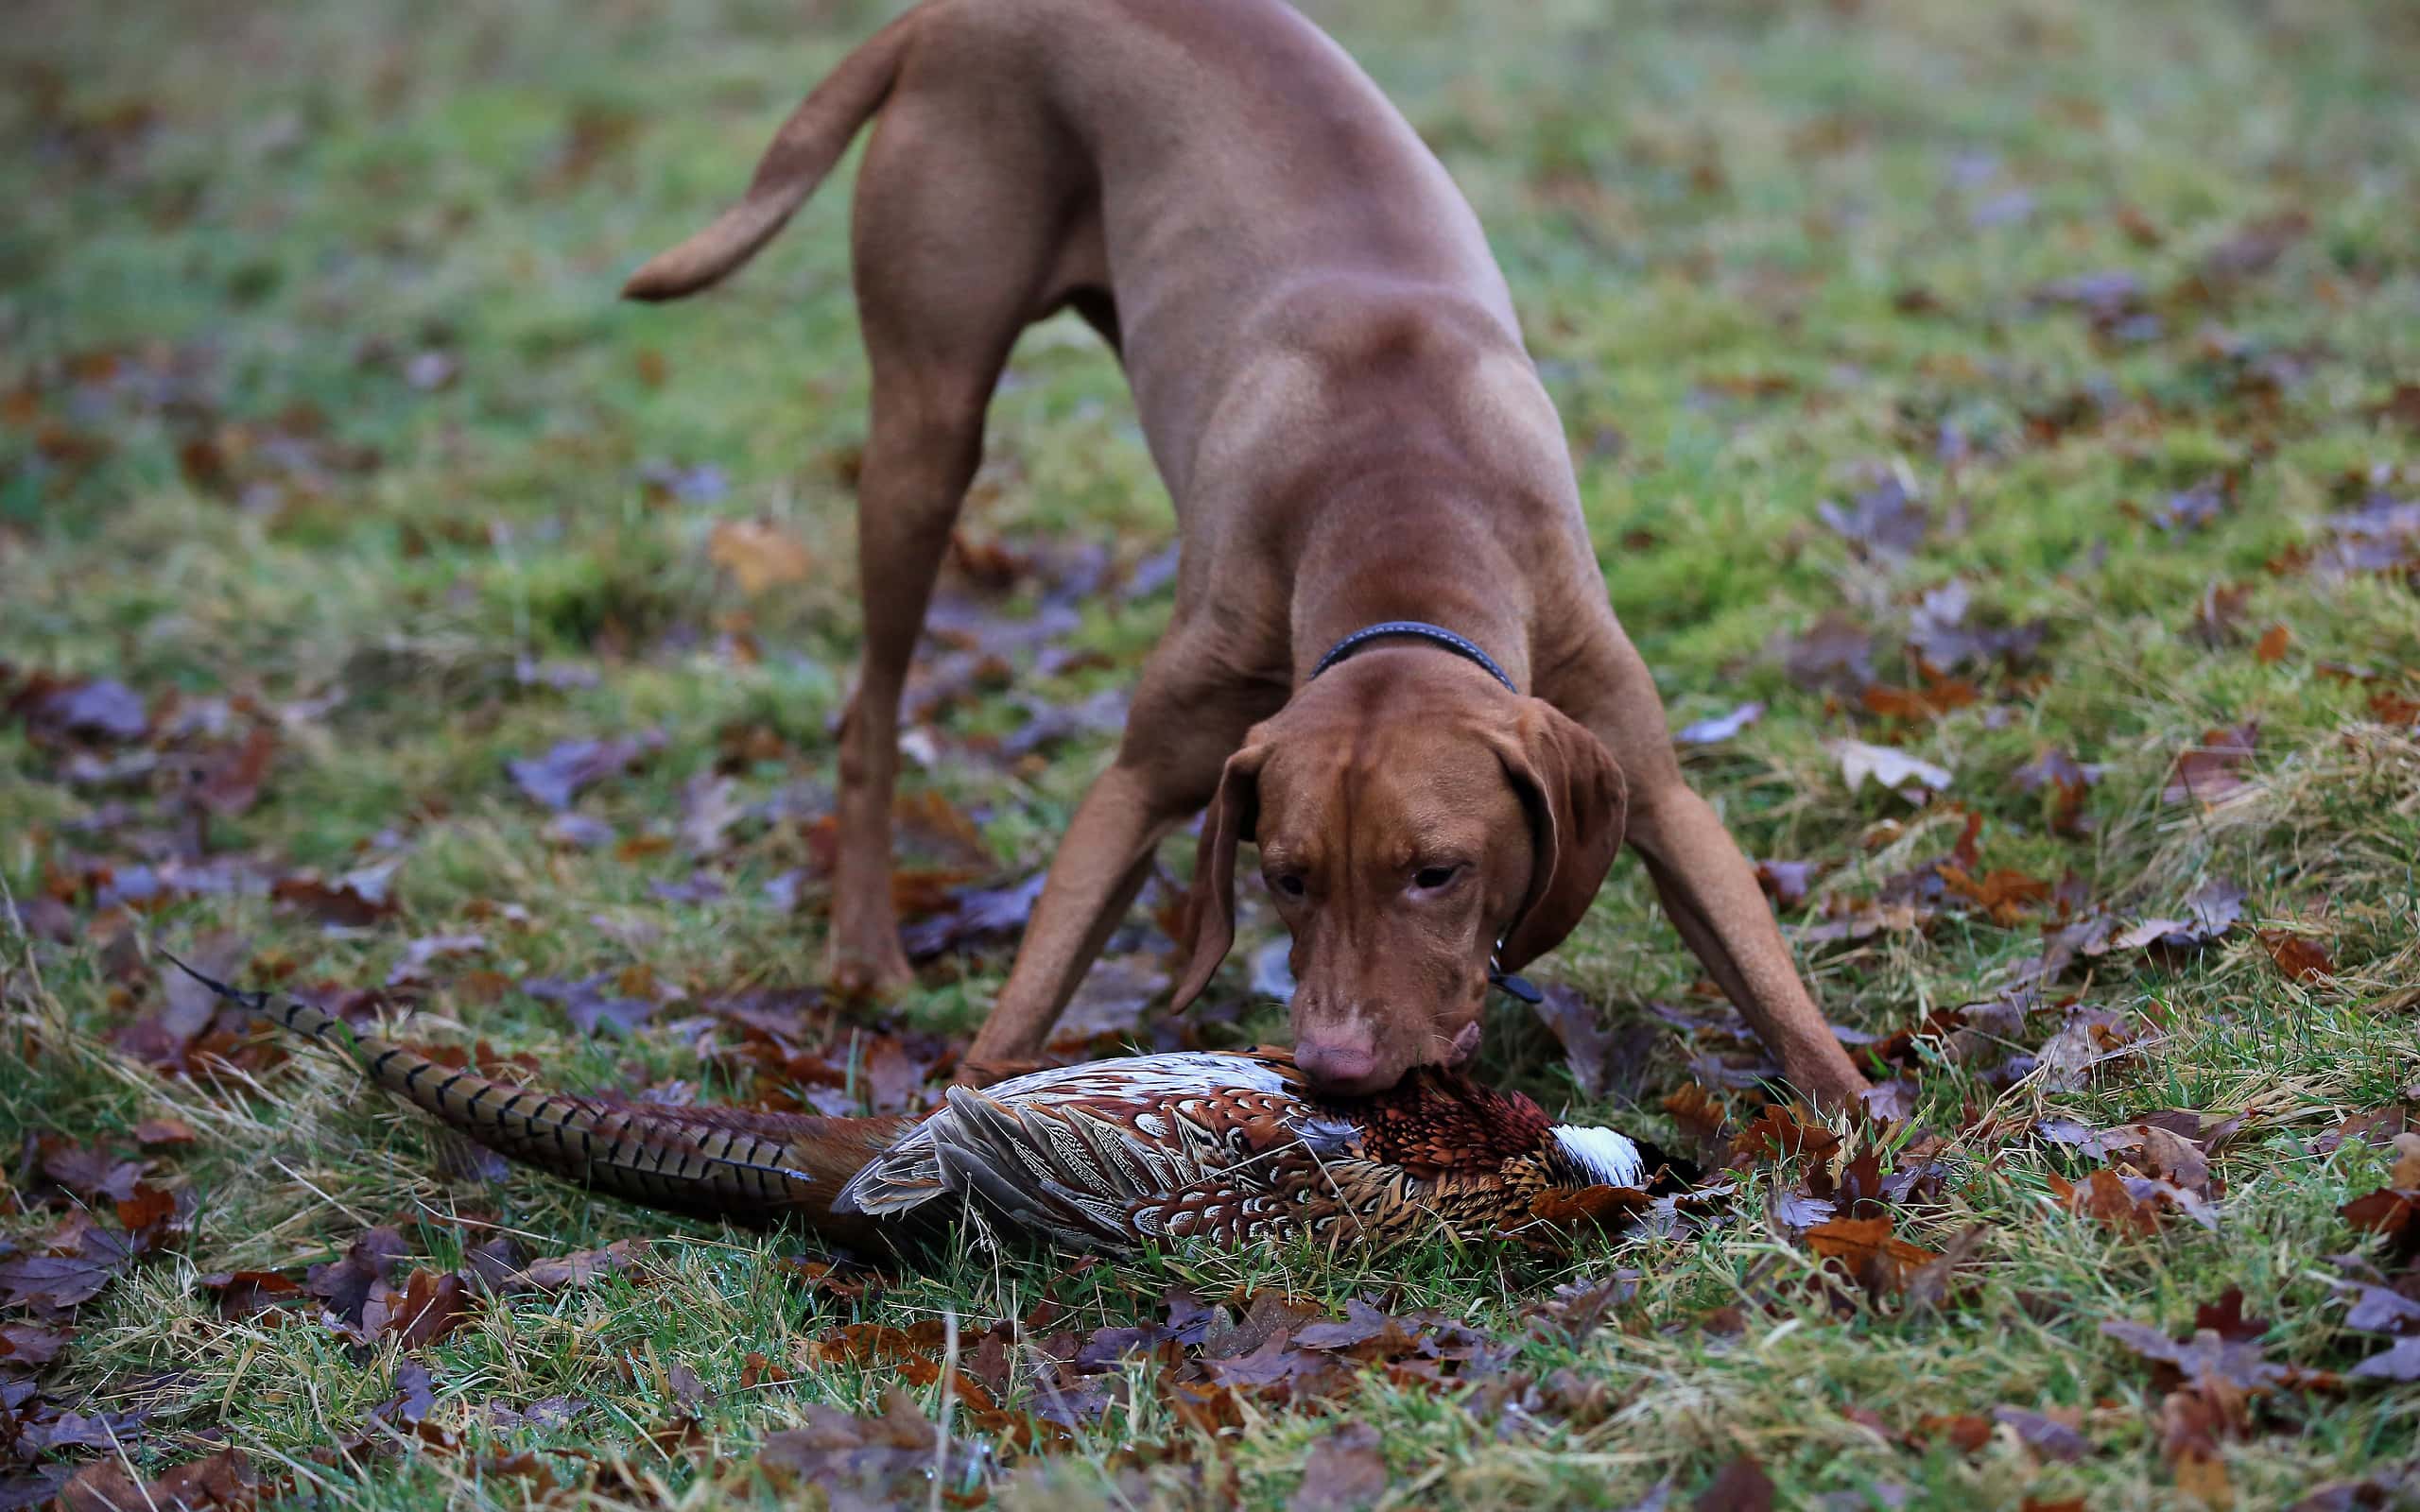 A young Vizsla Gun-dog retrieving a recently shot pheasant